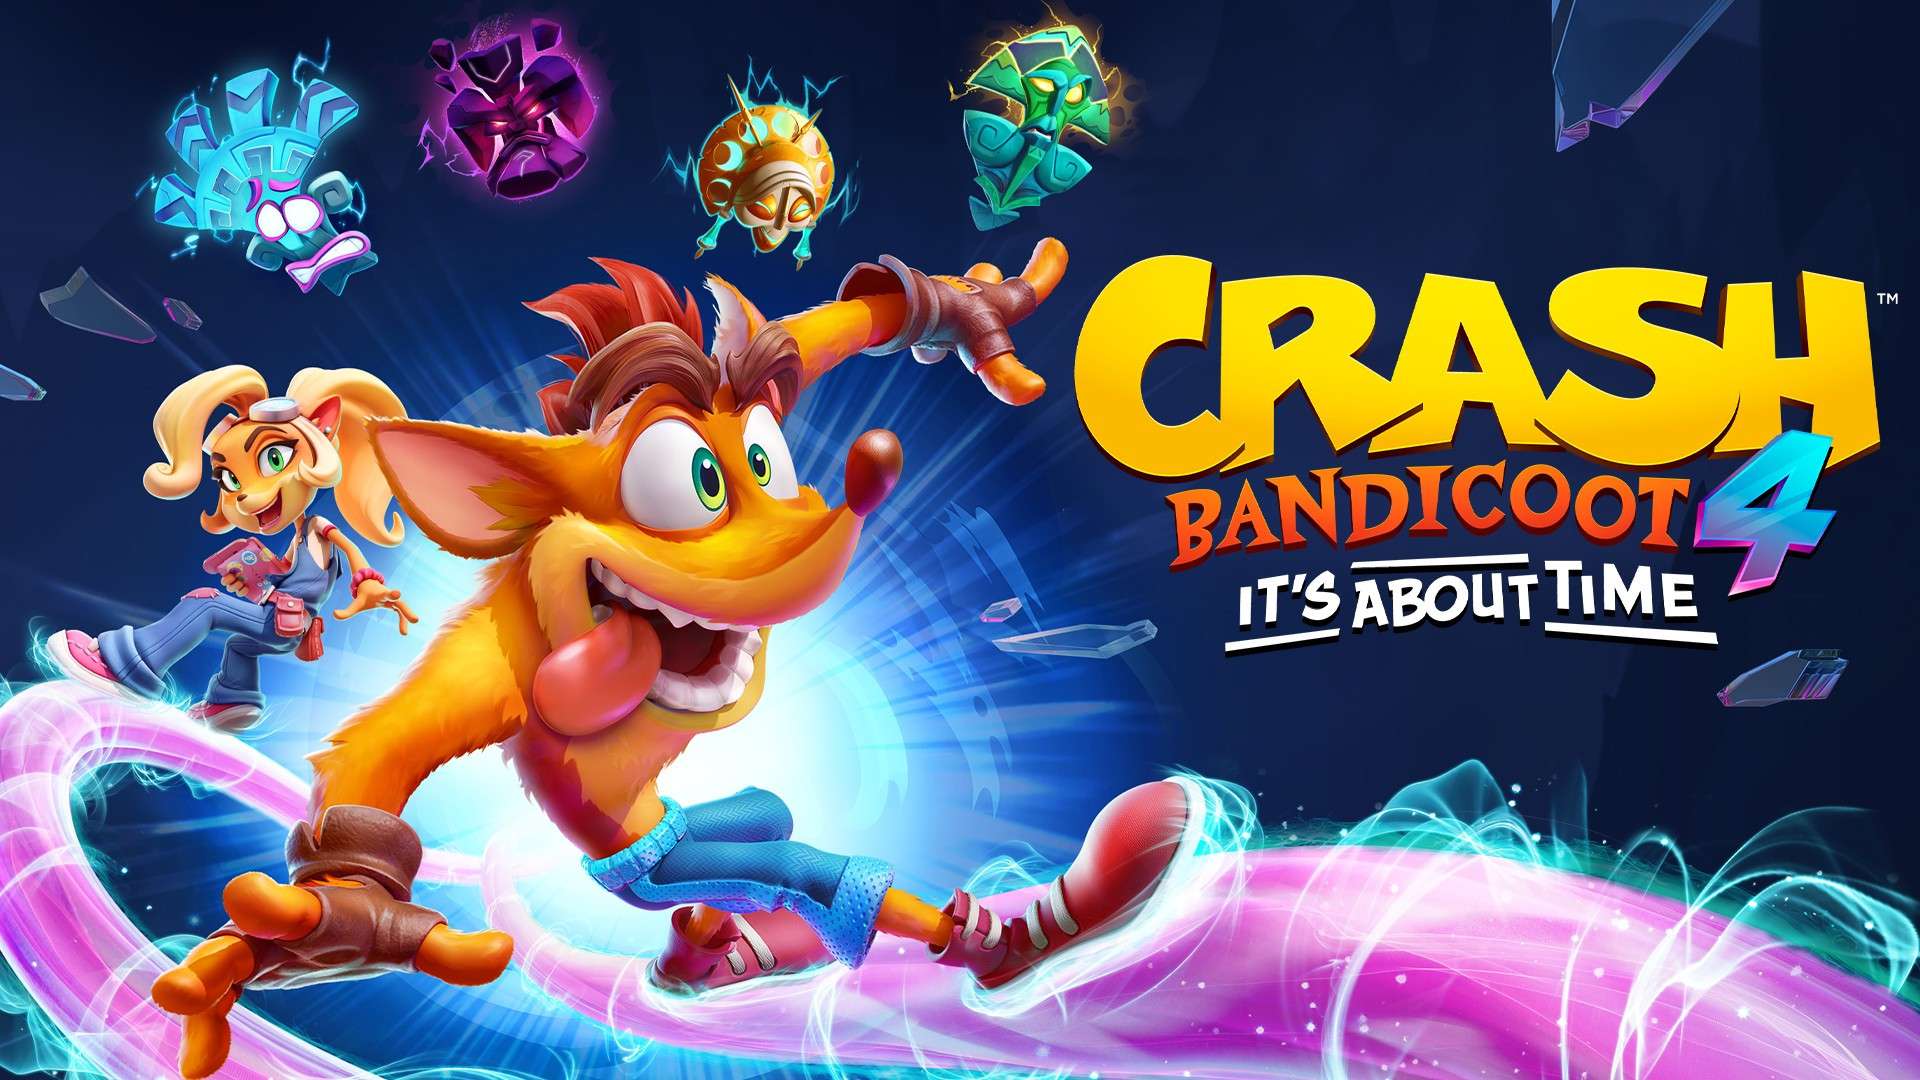 Crash Bandicoot 4 dará el salto a PlayStation 5 el 12 de marzo